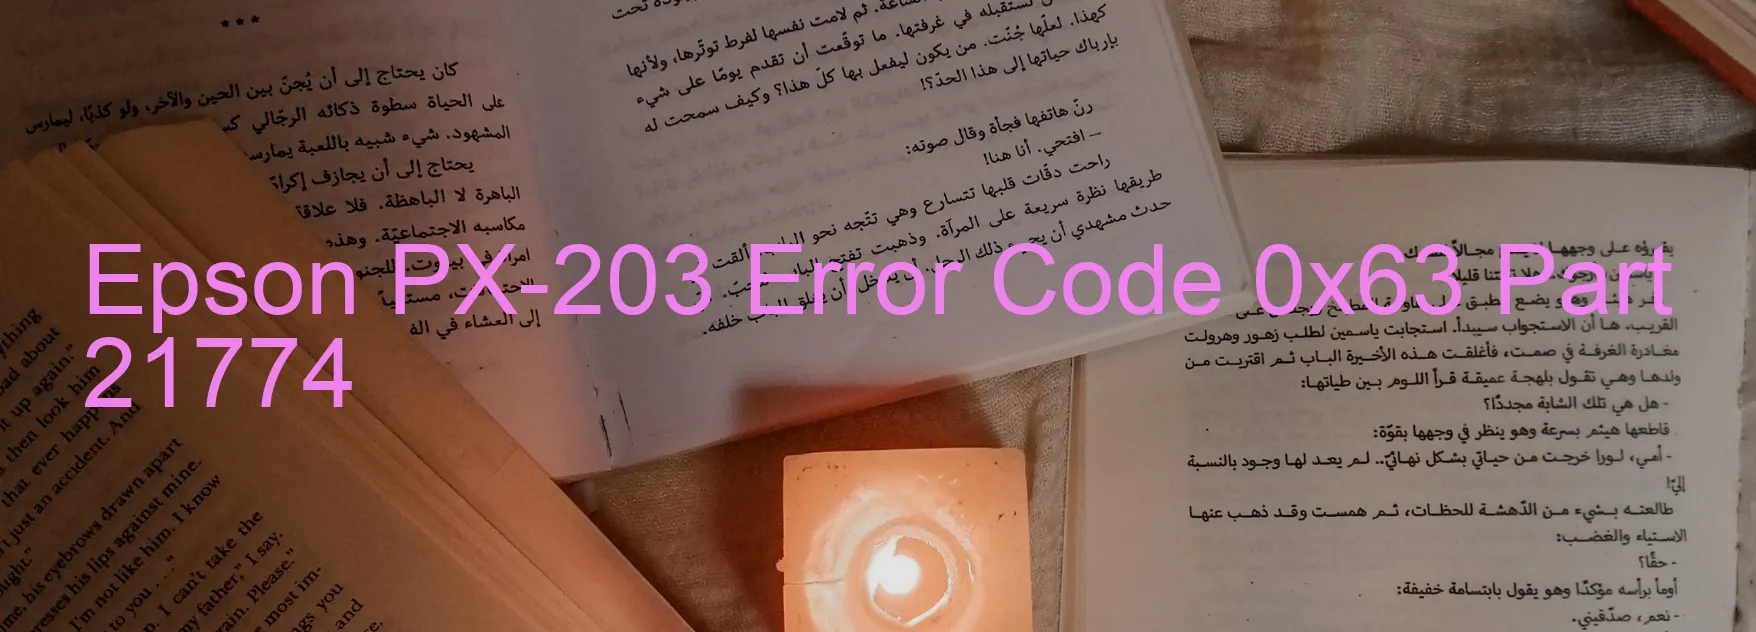 Epson PX-203 Error 0x63